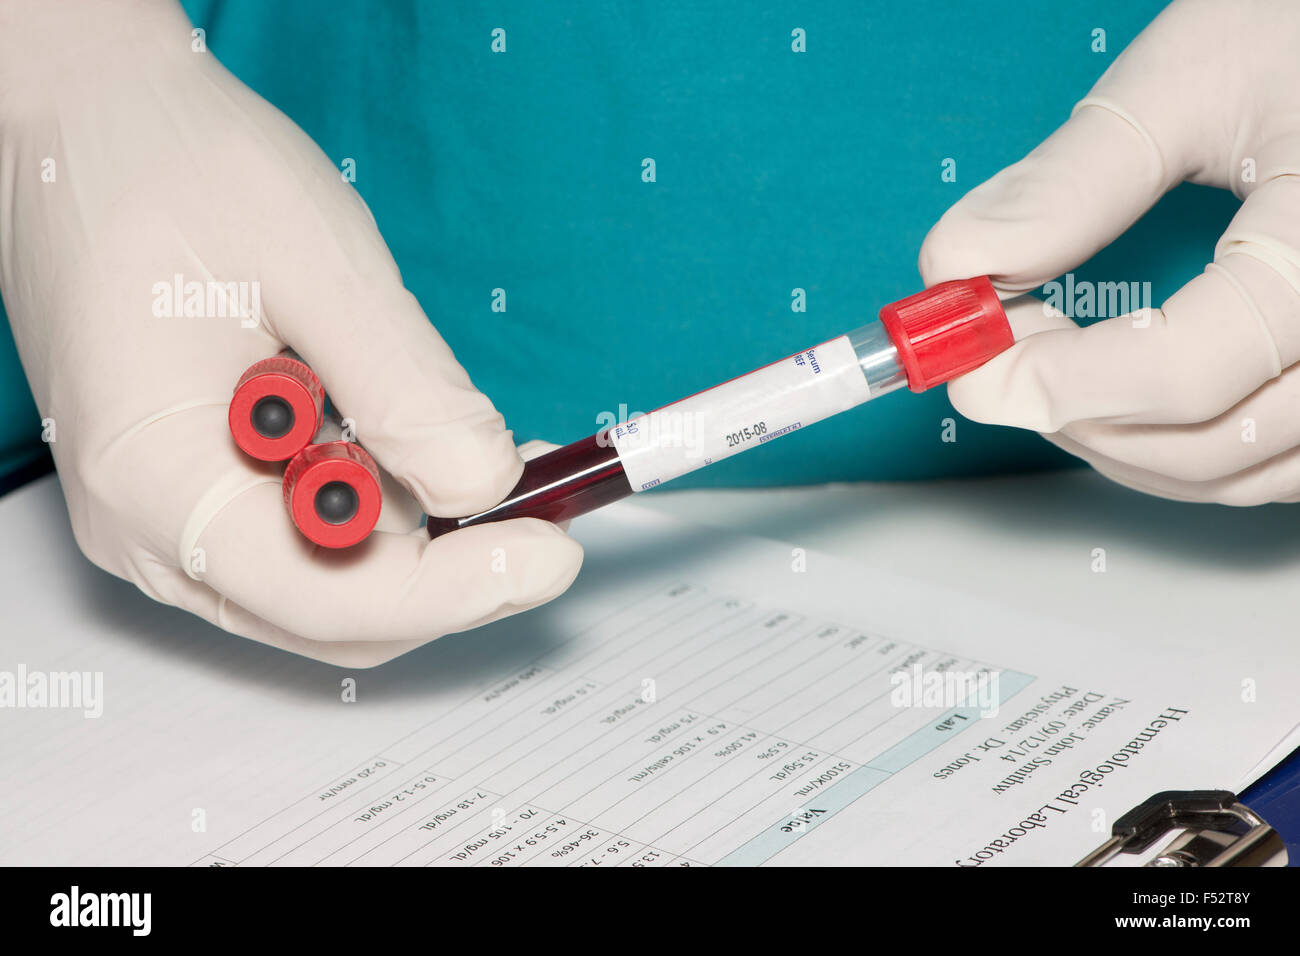 Blutsammelröhrchen mit Blindversuch Label von Techniker gehalten. Stockfoto